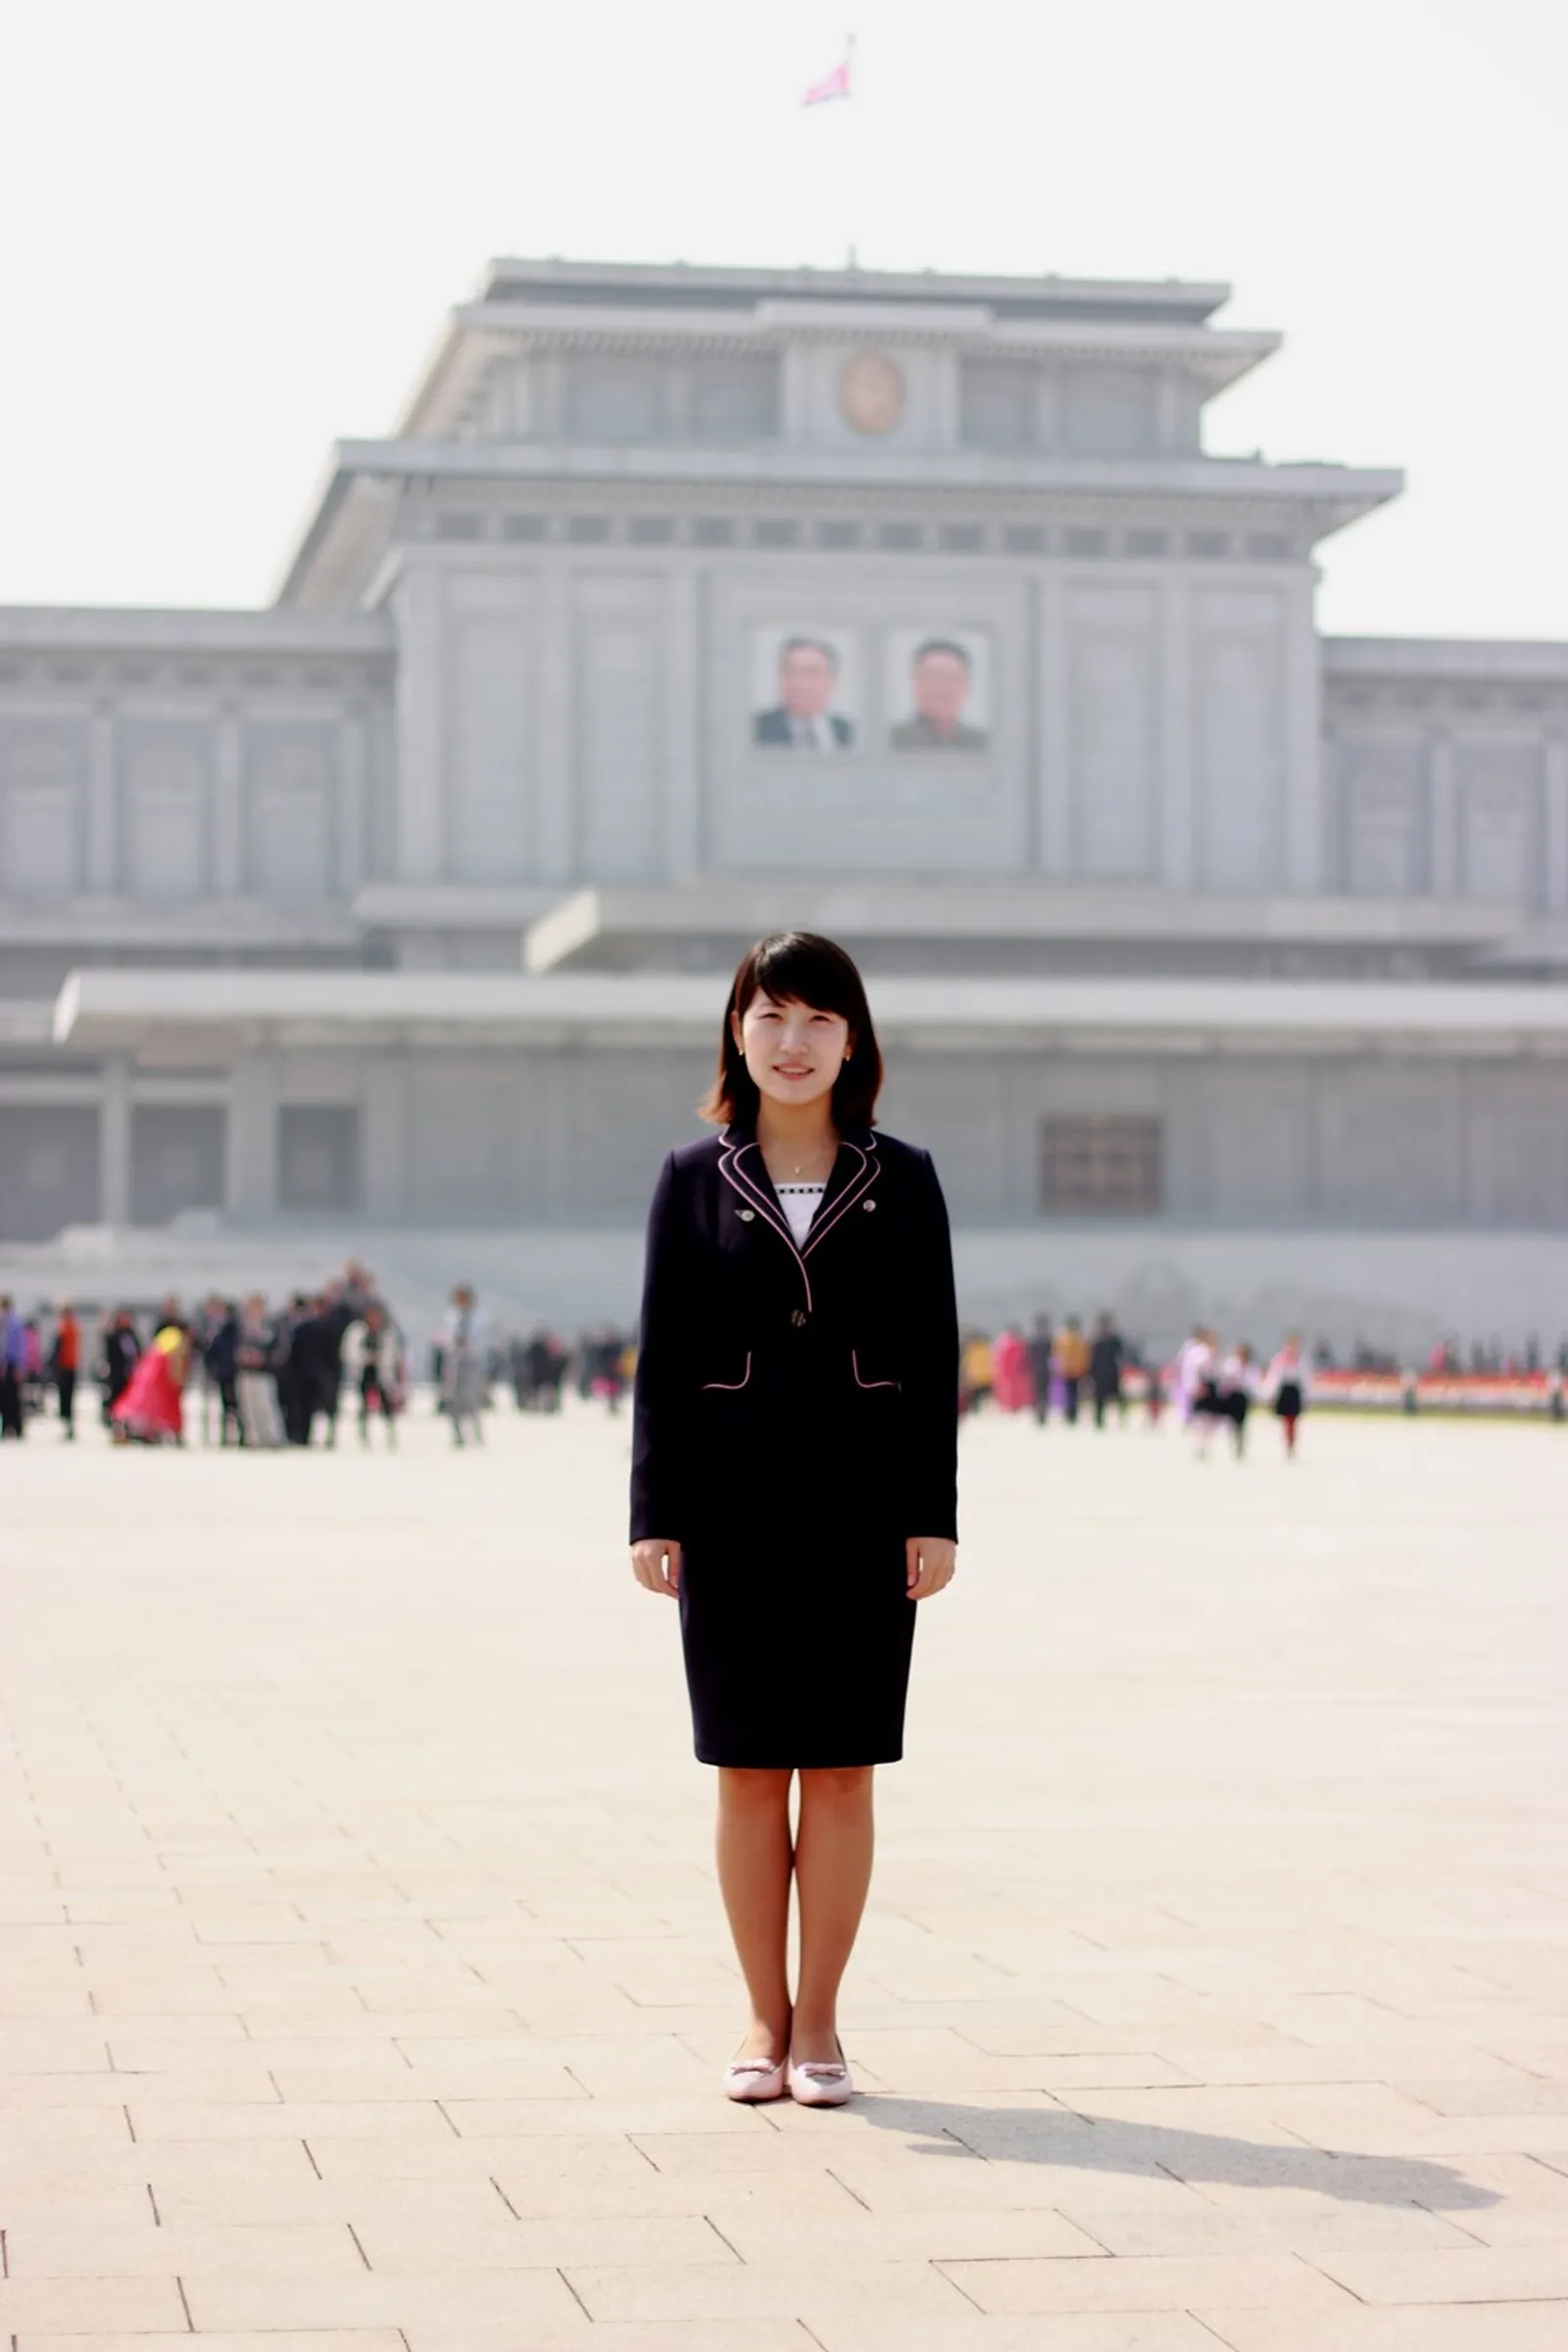 Intip Modisnya Gaya Pakaian Perempuan di Korea Utara